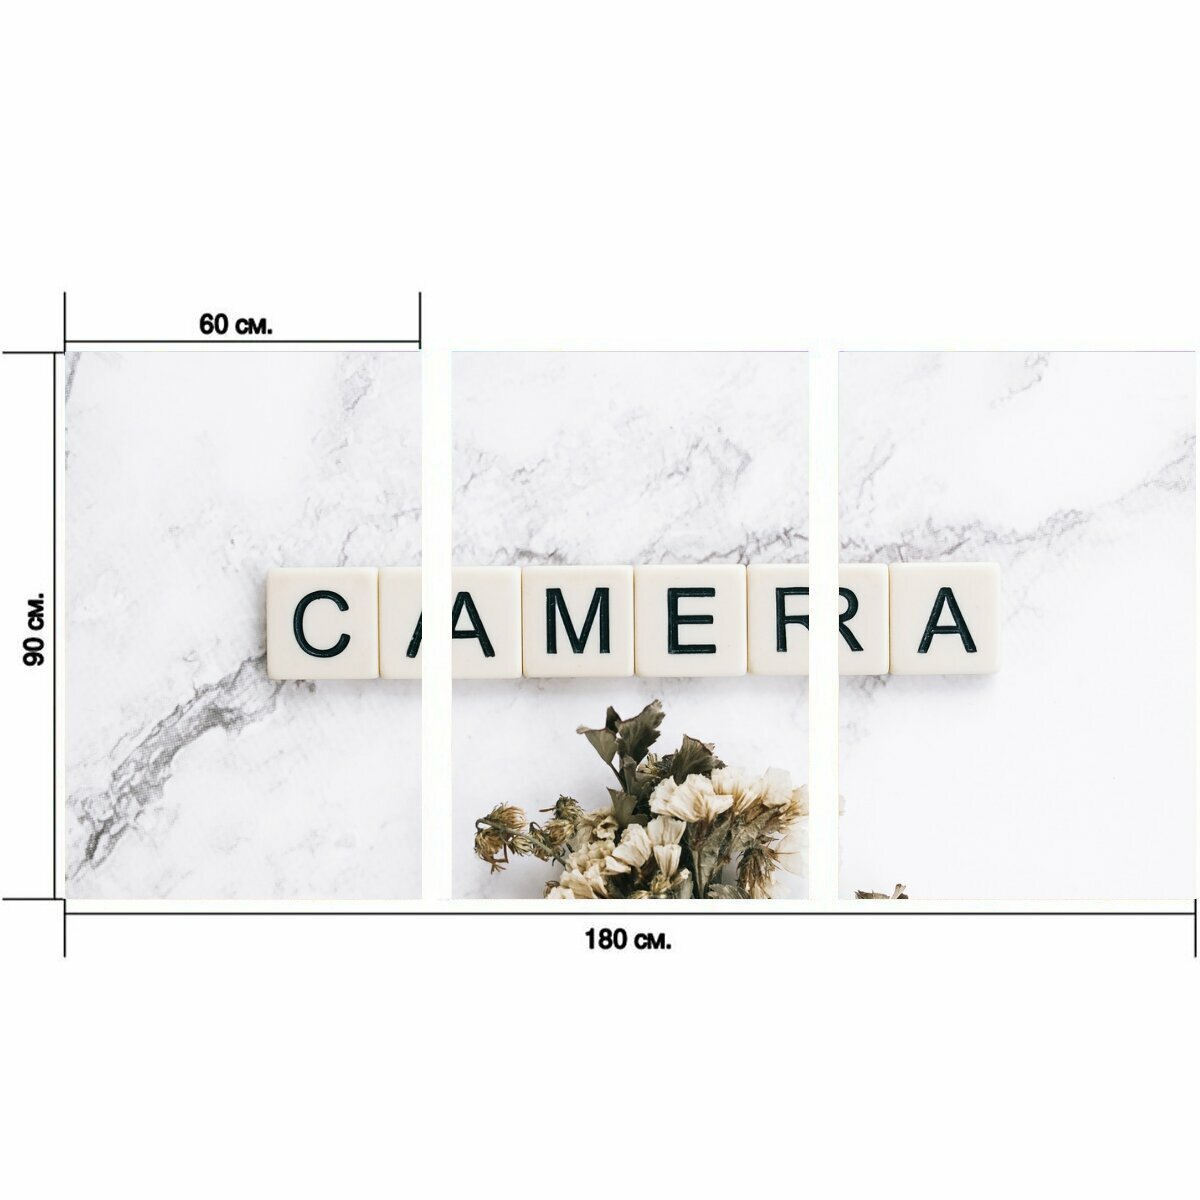 Модульный постер "Камера, орудие труда, оборудование" 180 x 90 см. для интерьера